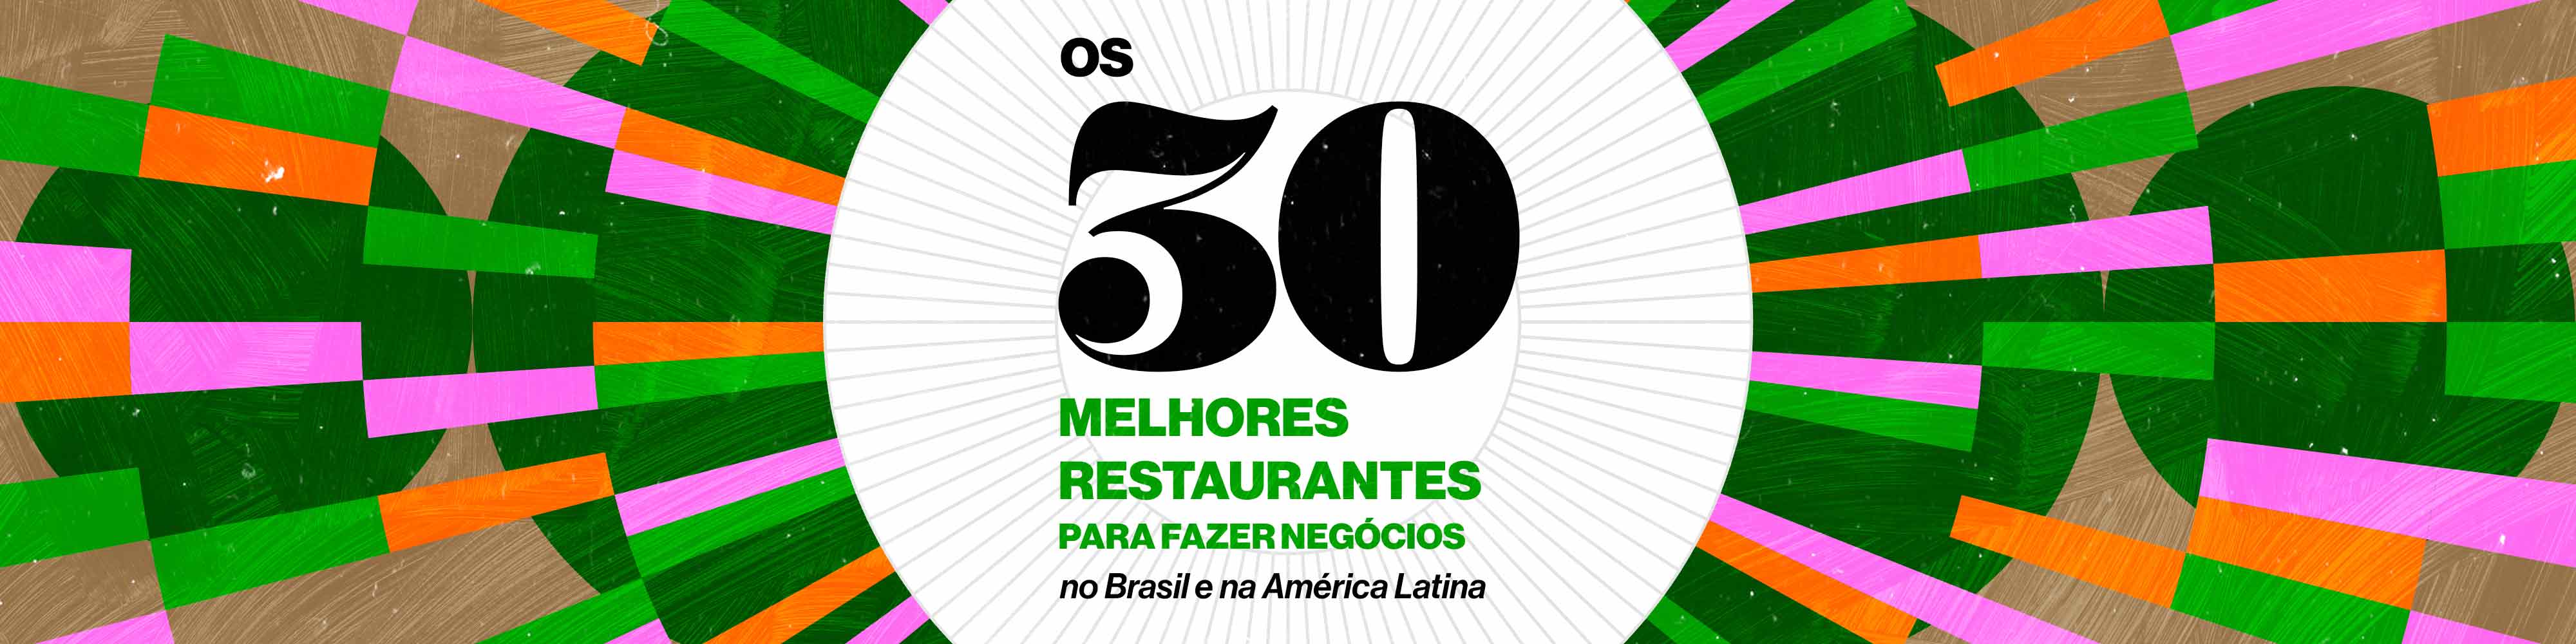 Os 30 melhores restaurantes para fazer negócios no Brasil e na América Latina